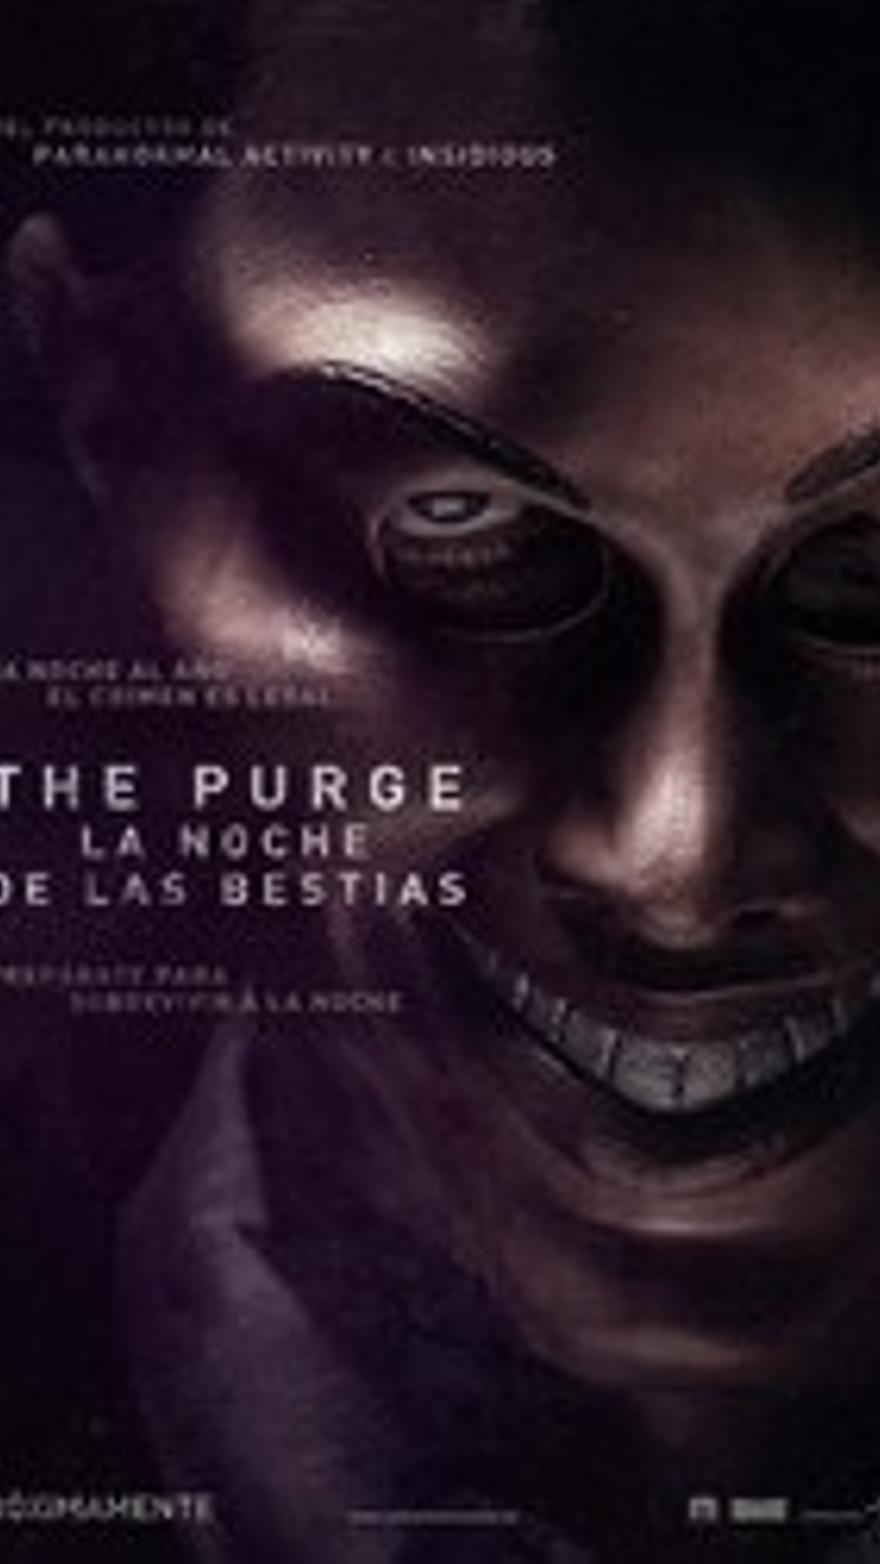 The purge: la noche de las bestias